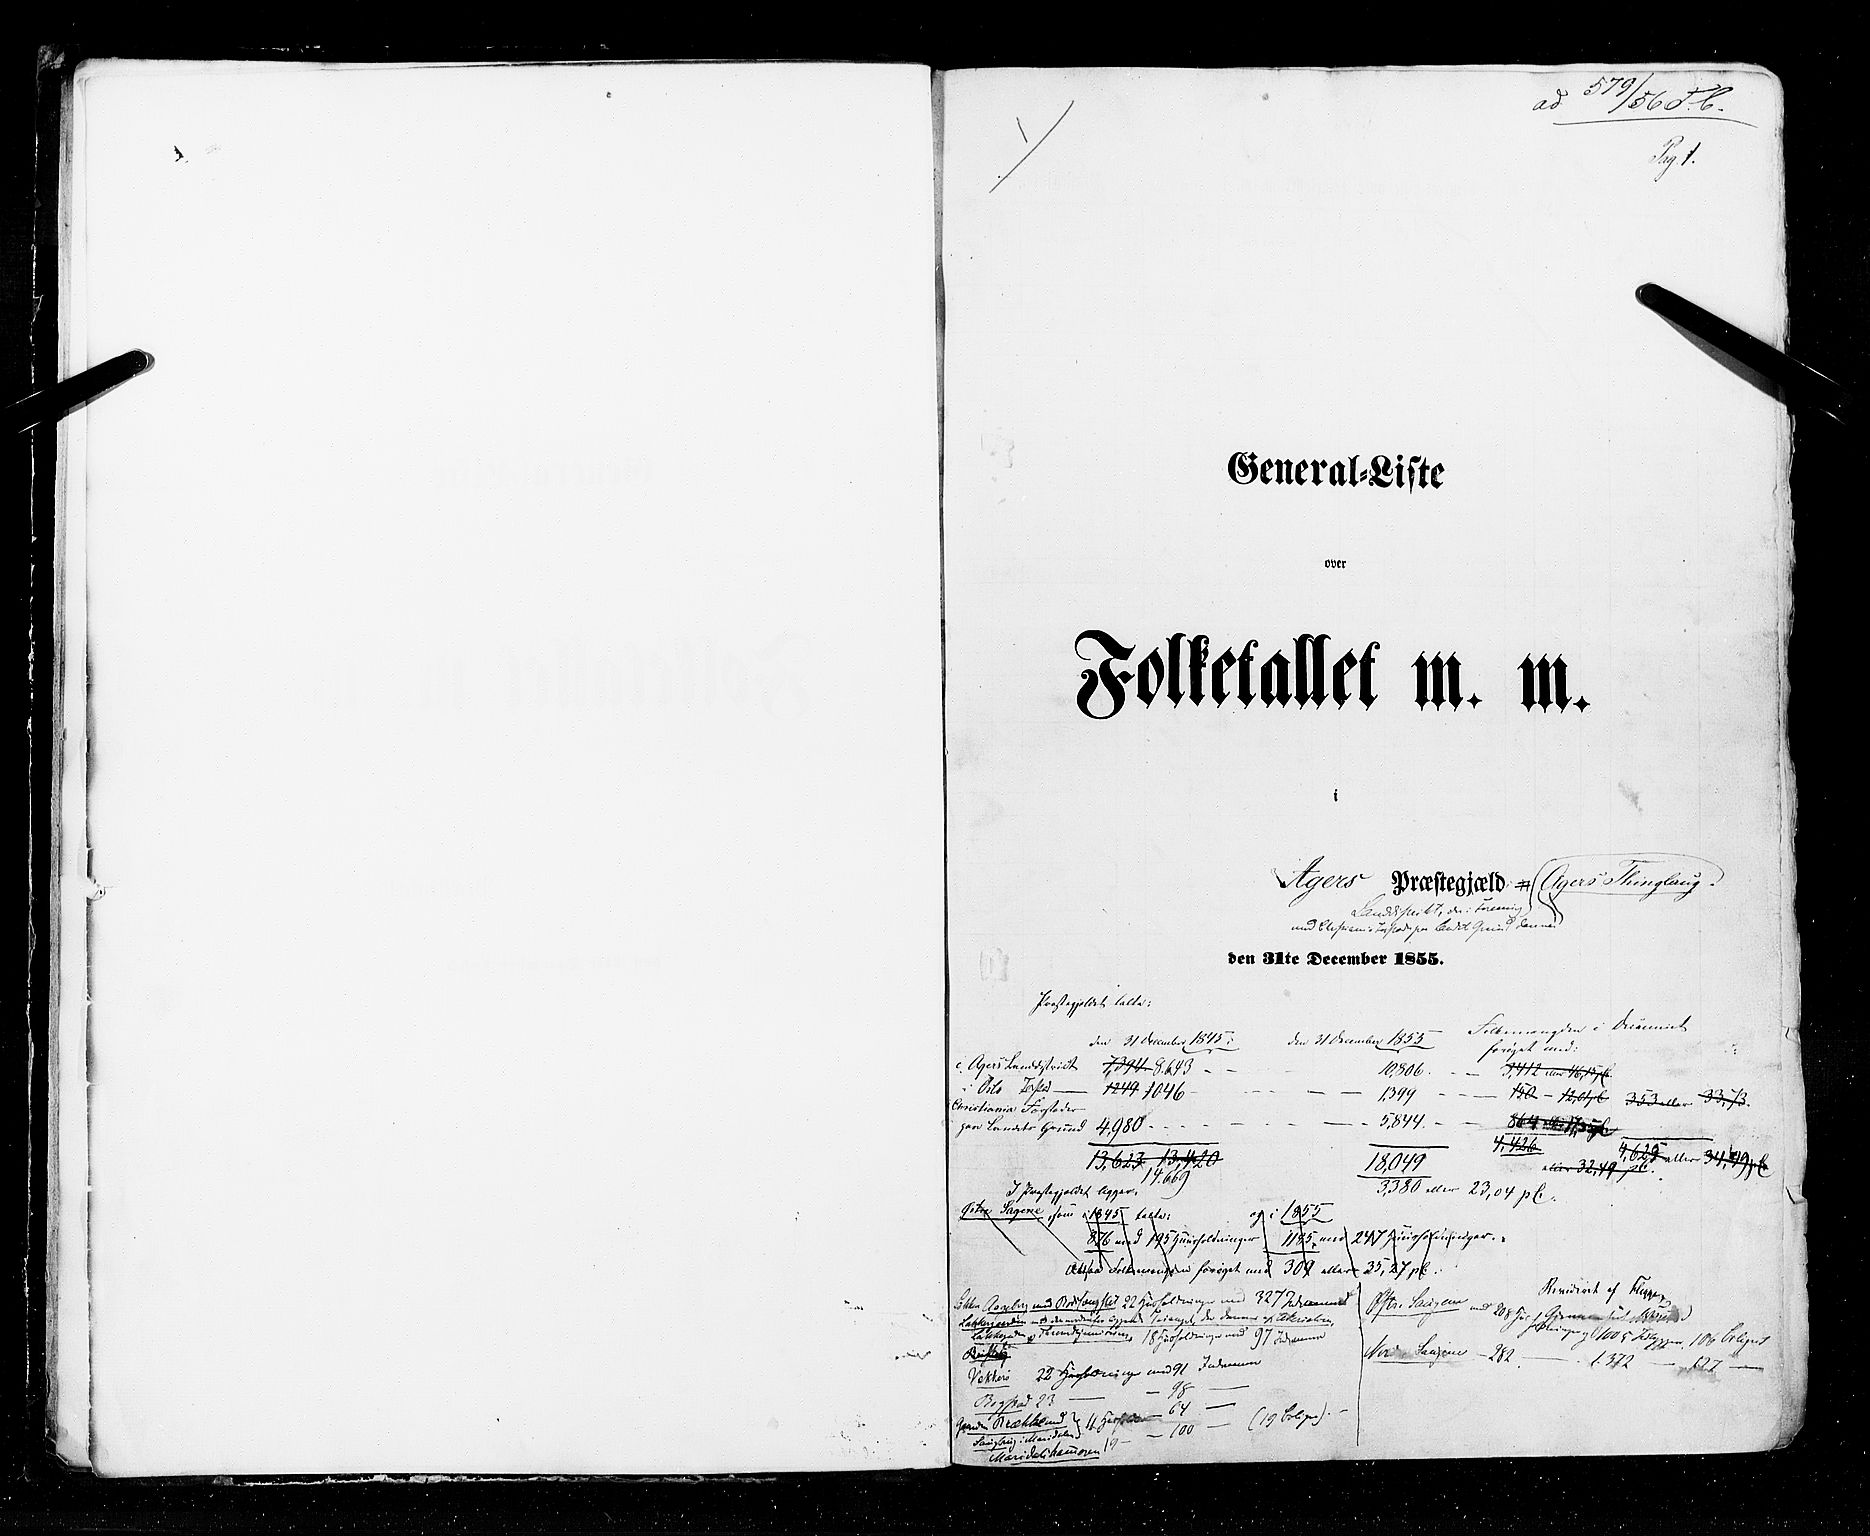 RA, Folketellingen 1855, bind 1: Akershus amt, Smålenenes amt og Hedemarken amt, 1855, s. 1